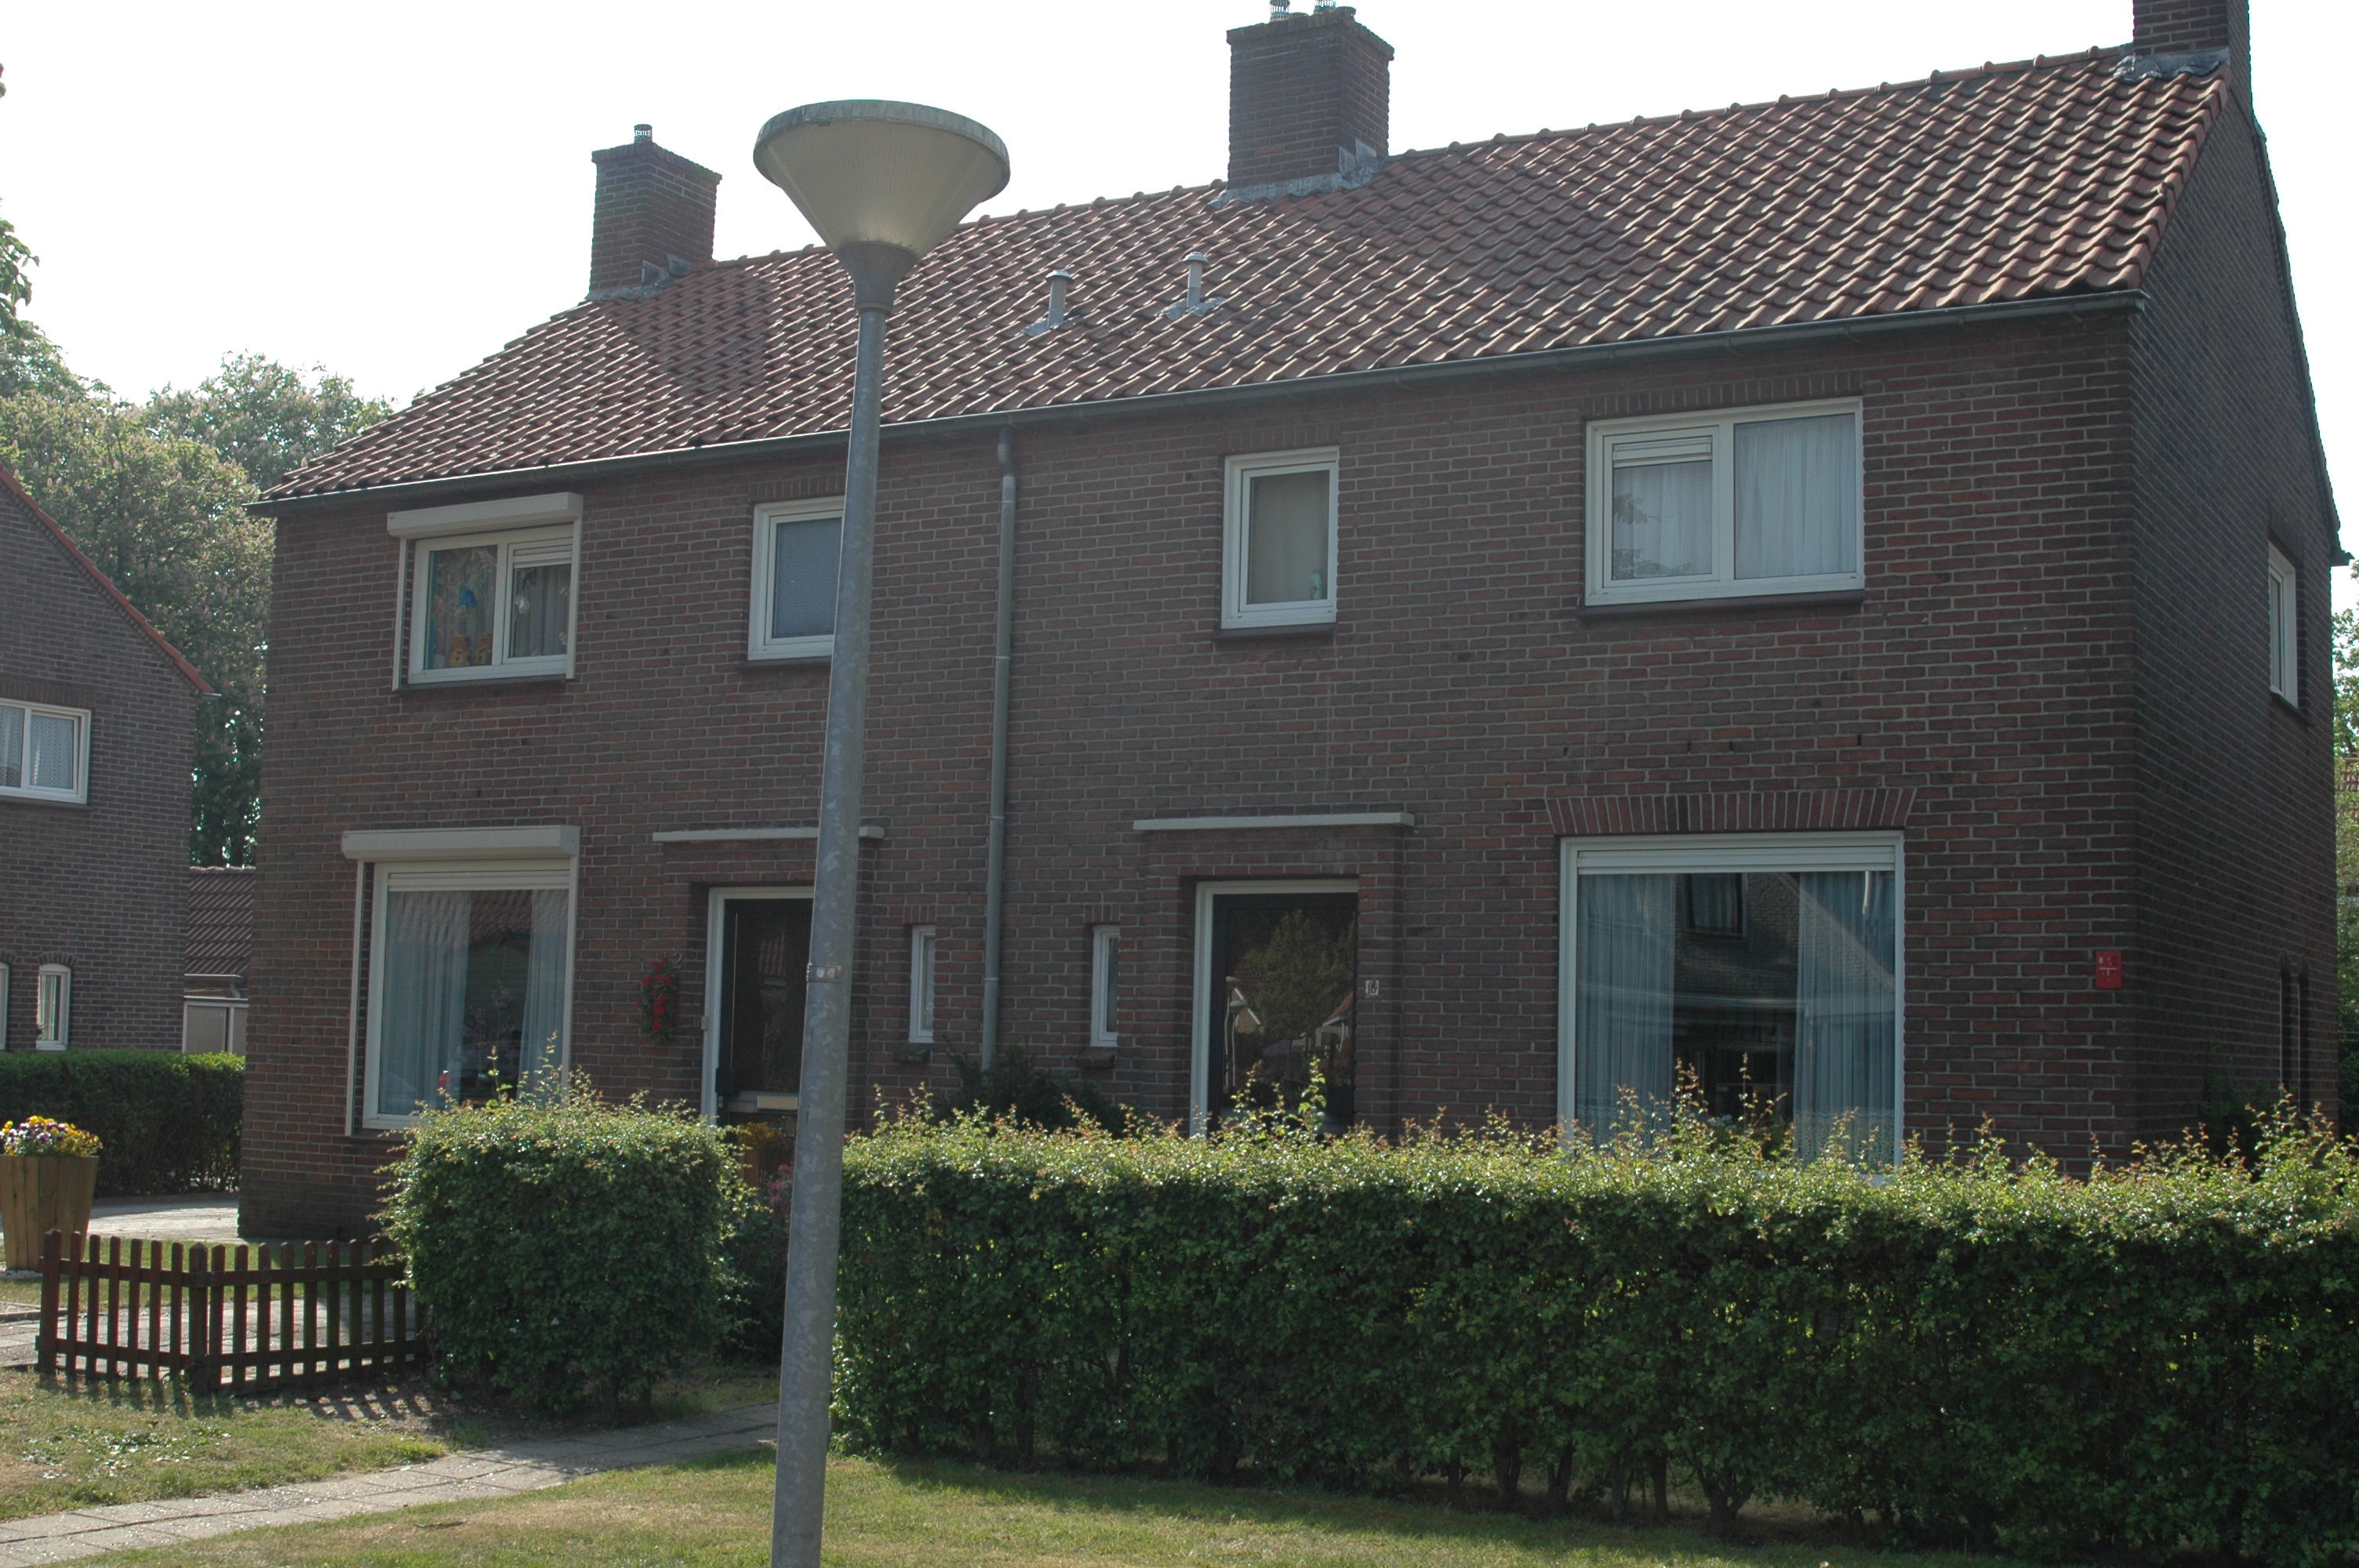 Prinses Beatrixlaan 14, 7742 VL Coevorden, Nederland